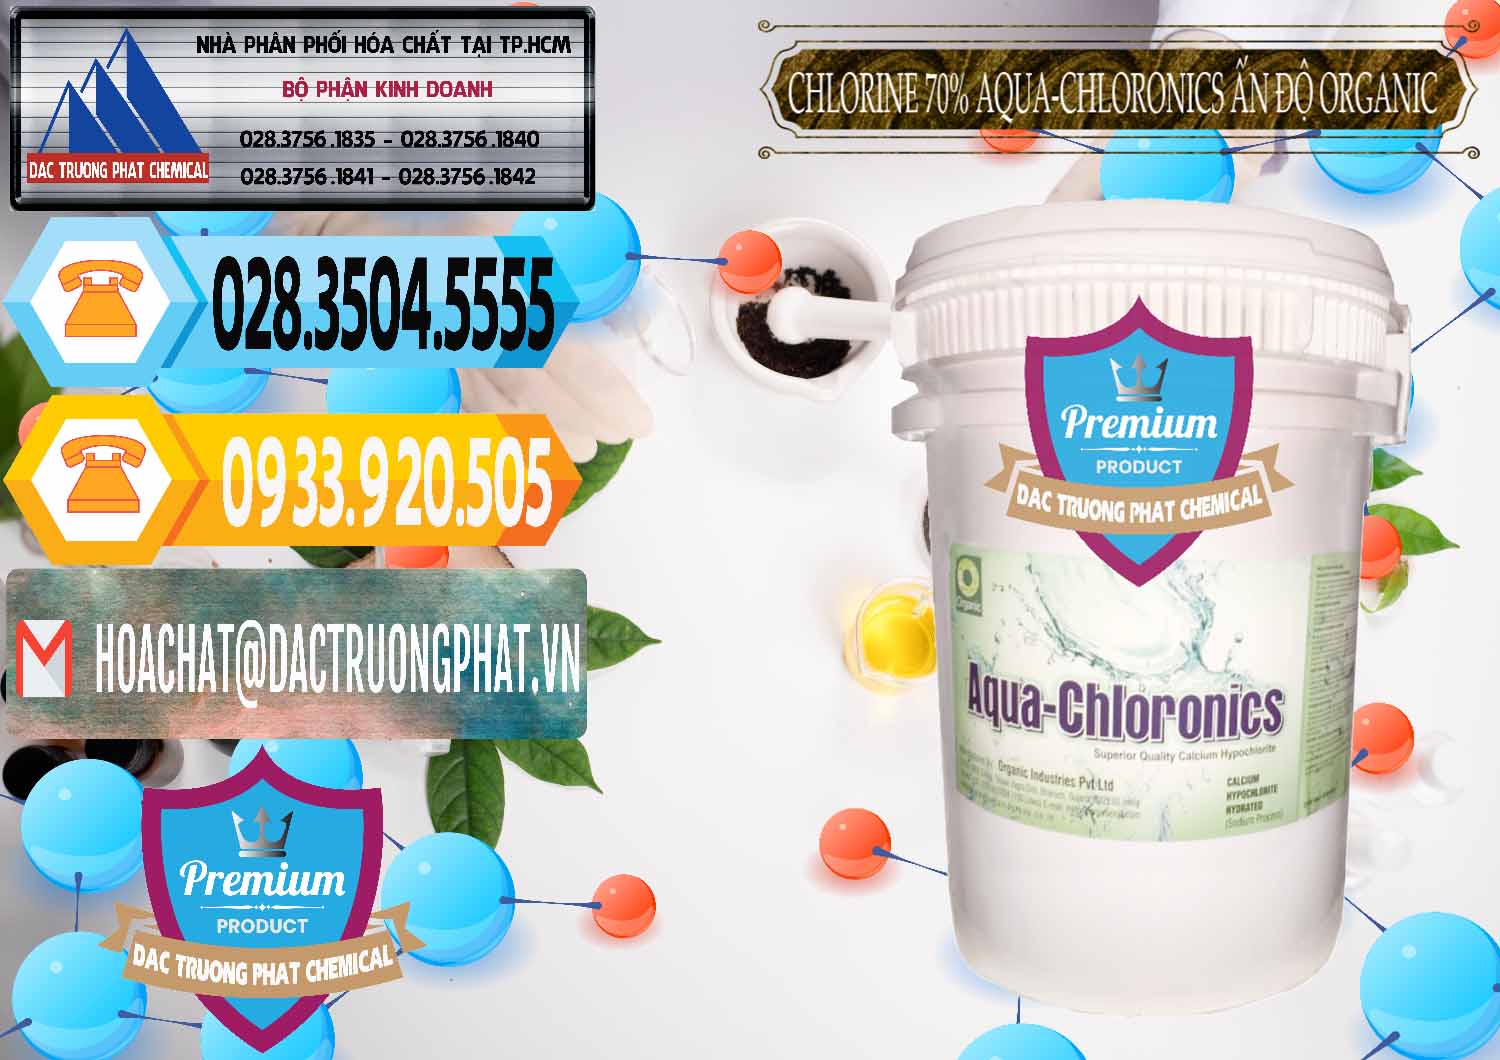 Nơi chuyên nhập khẩu & bán Chlorine – Clorin 70% Aqua-Chloronics Ấn Độ Organic India - 0211 - Đơn vị chuyên nhập khẩu và cung cấp hóa chất tại TP.HCM - hoachattayrua.net